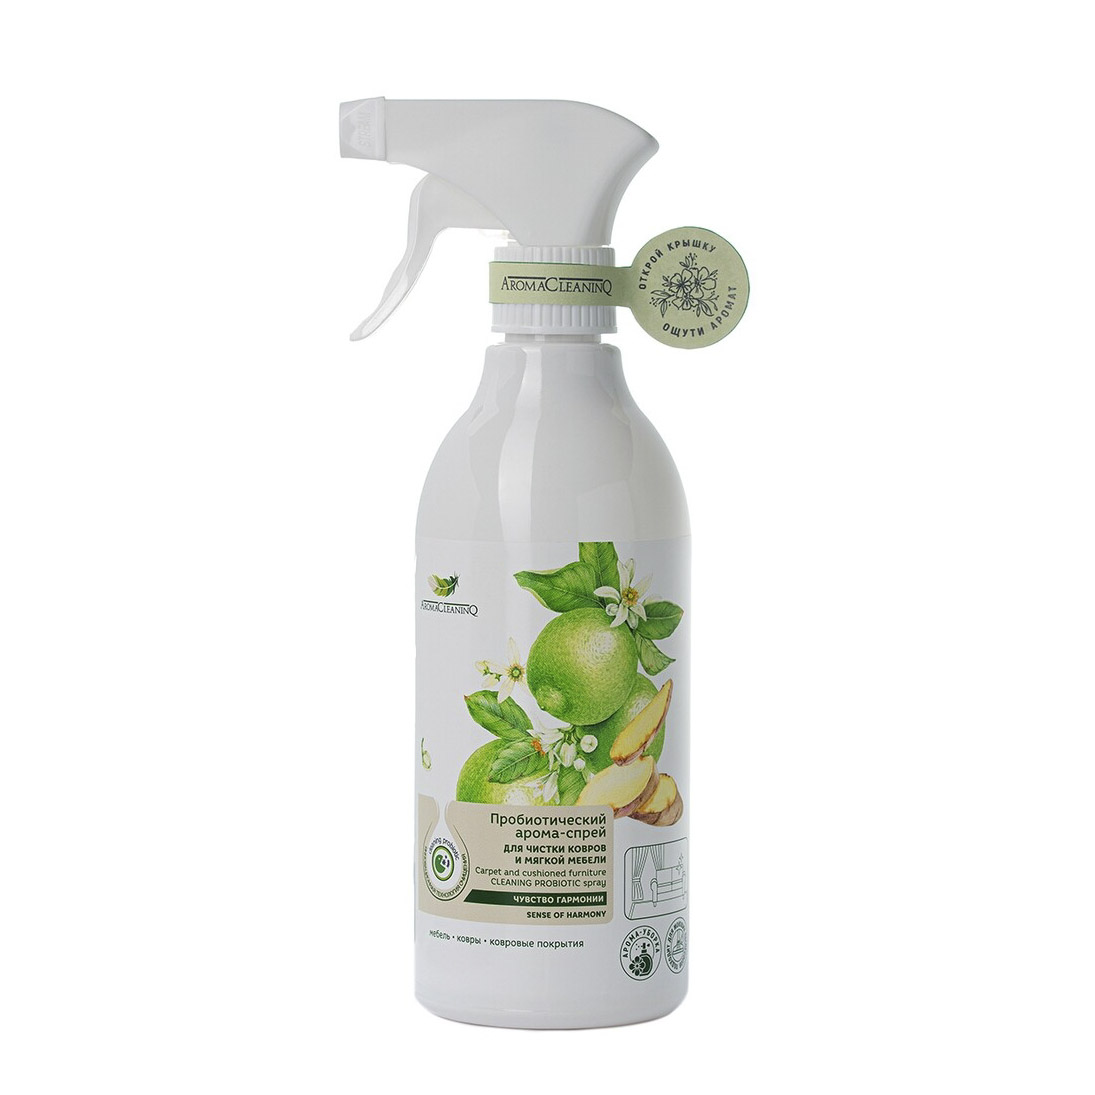 Пробиотический арома-спрей AromaCleaninQ  Чувство гармонии для чистки ковровых покрытий и мягкой мебели 500 мл